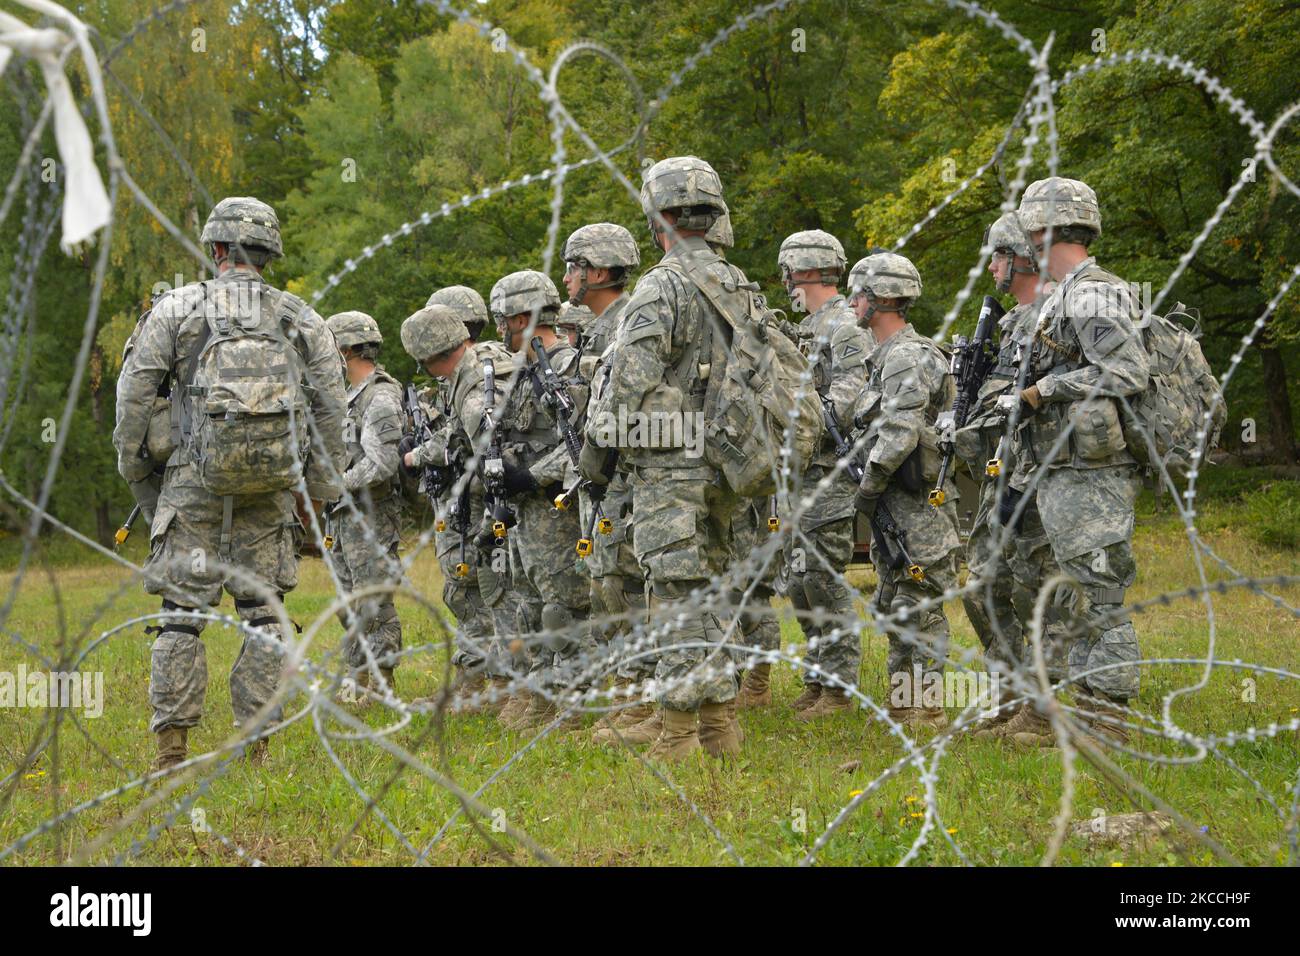 Les candidats de l'armée américaine attendent dans une zone d'attente. Banque D'Images